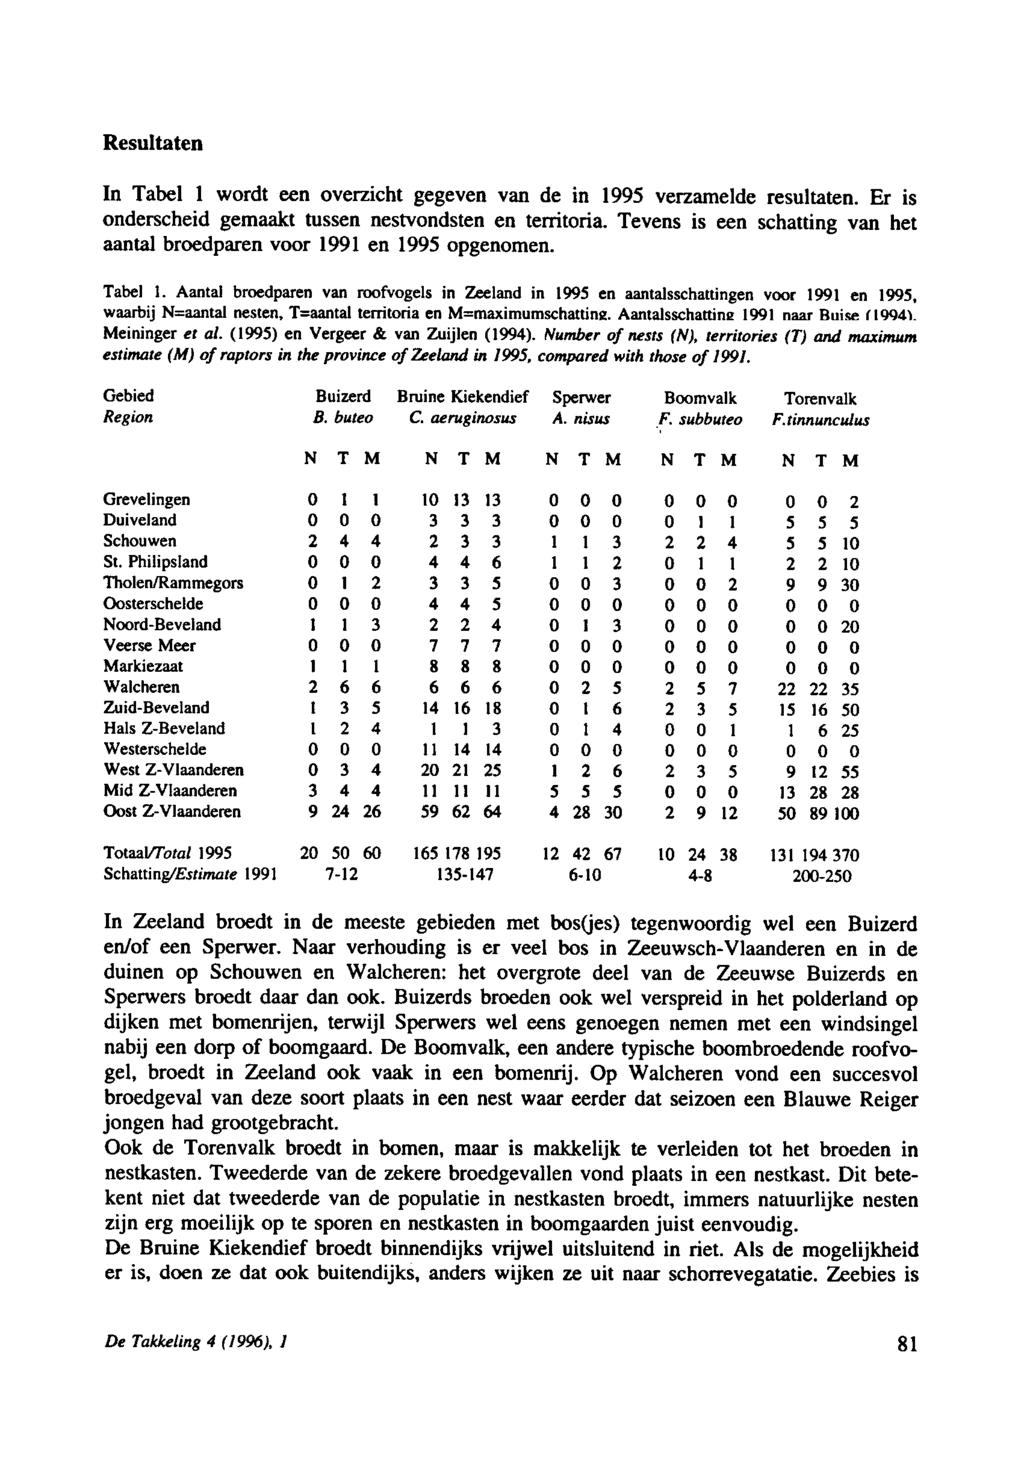 De Takkeling 4 (1996), / Resultaten In Tabel 1 wordt een overzicht gegeven van de in 1995 verzamelde resultaten. Er is onderscheid gemaakt tussen nestvondsten en territoria.